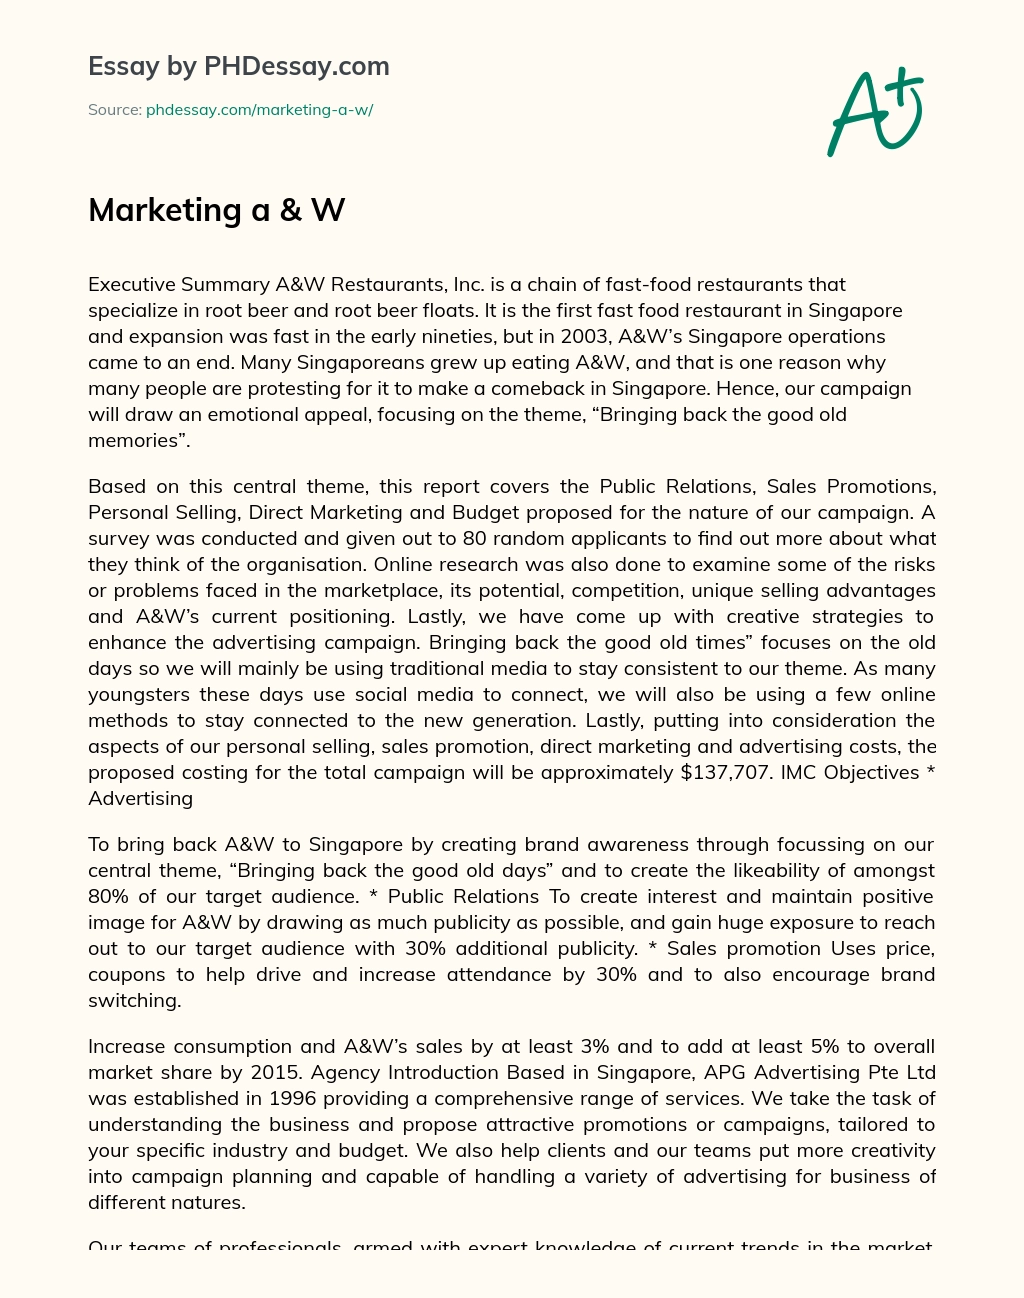 Marketing a & W essay